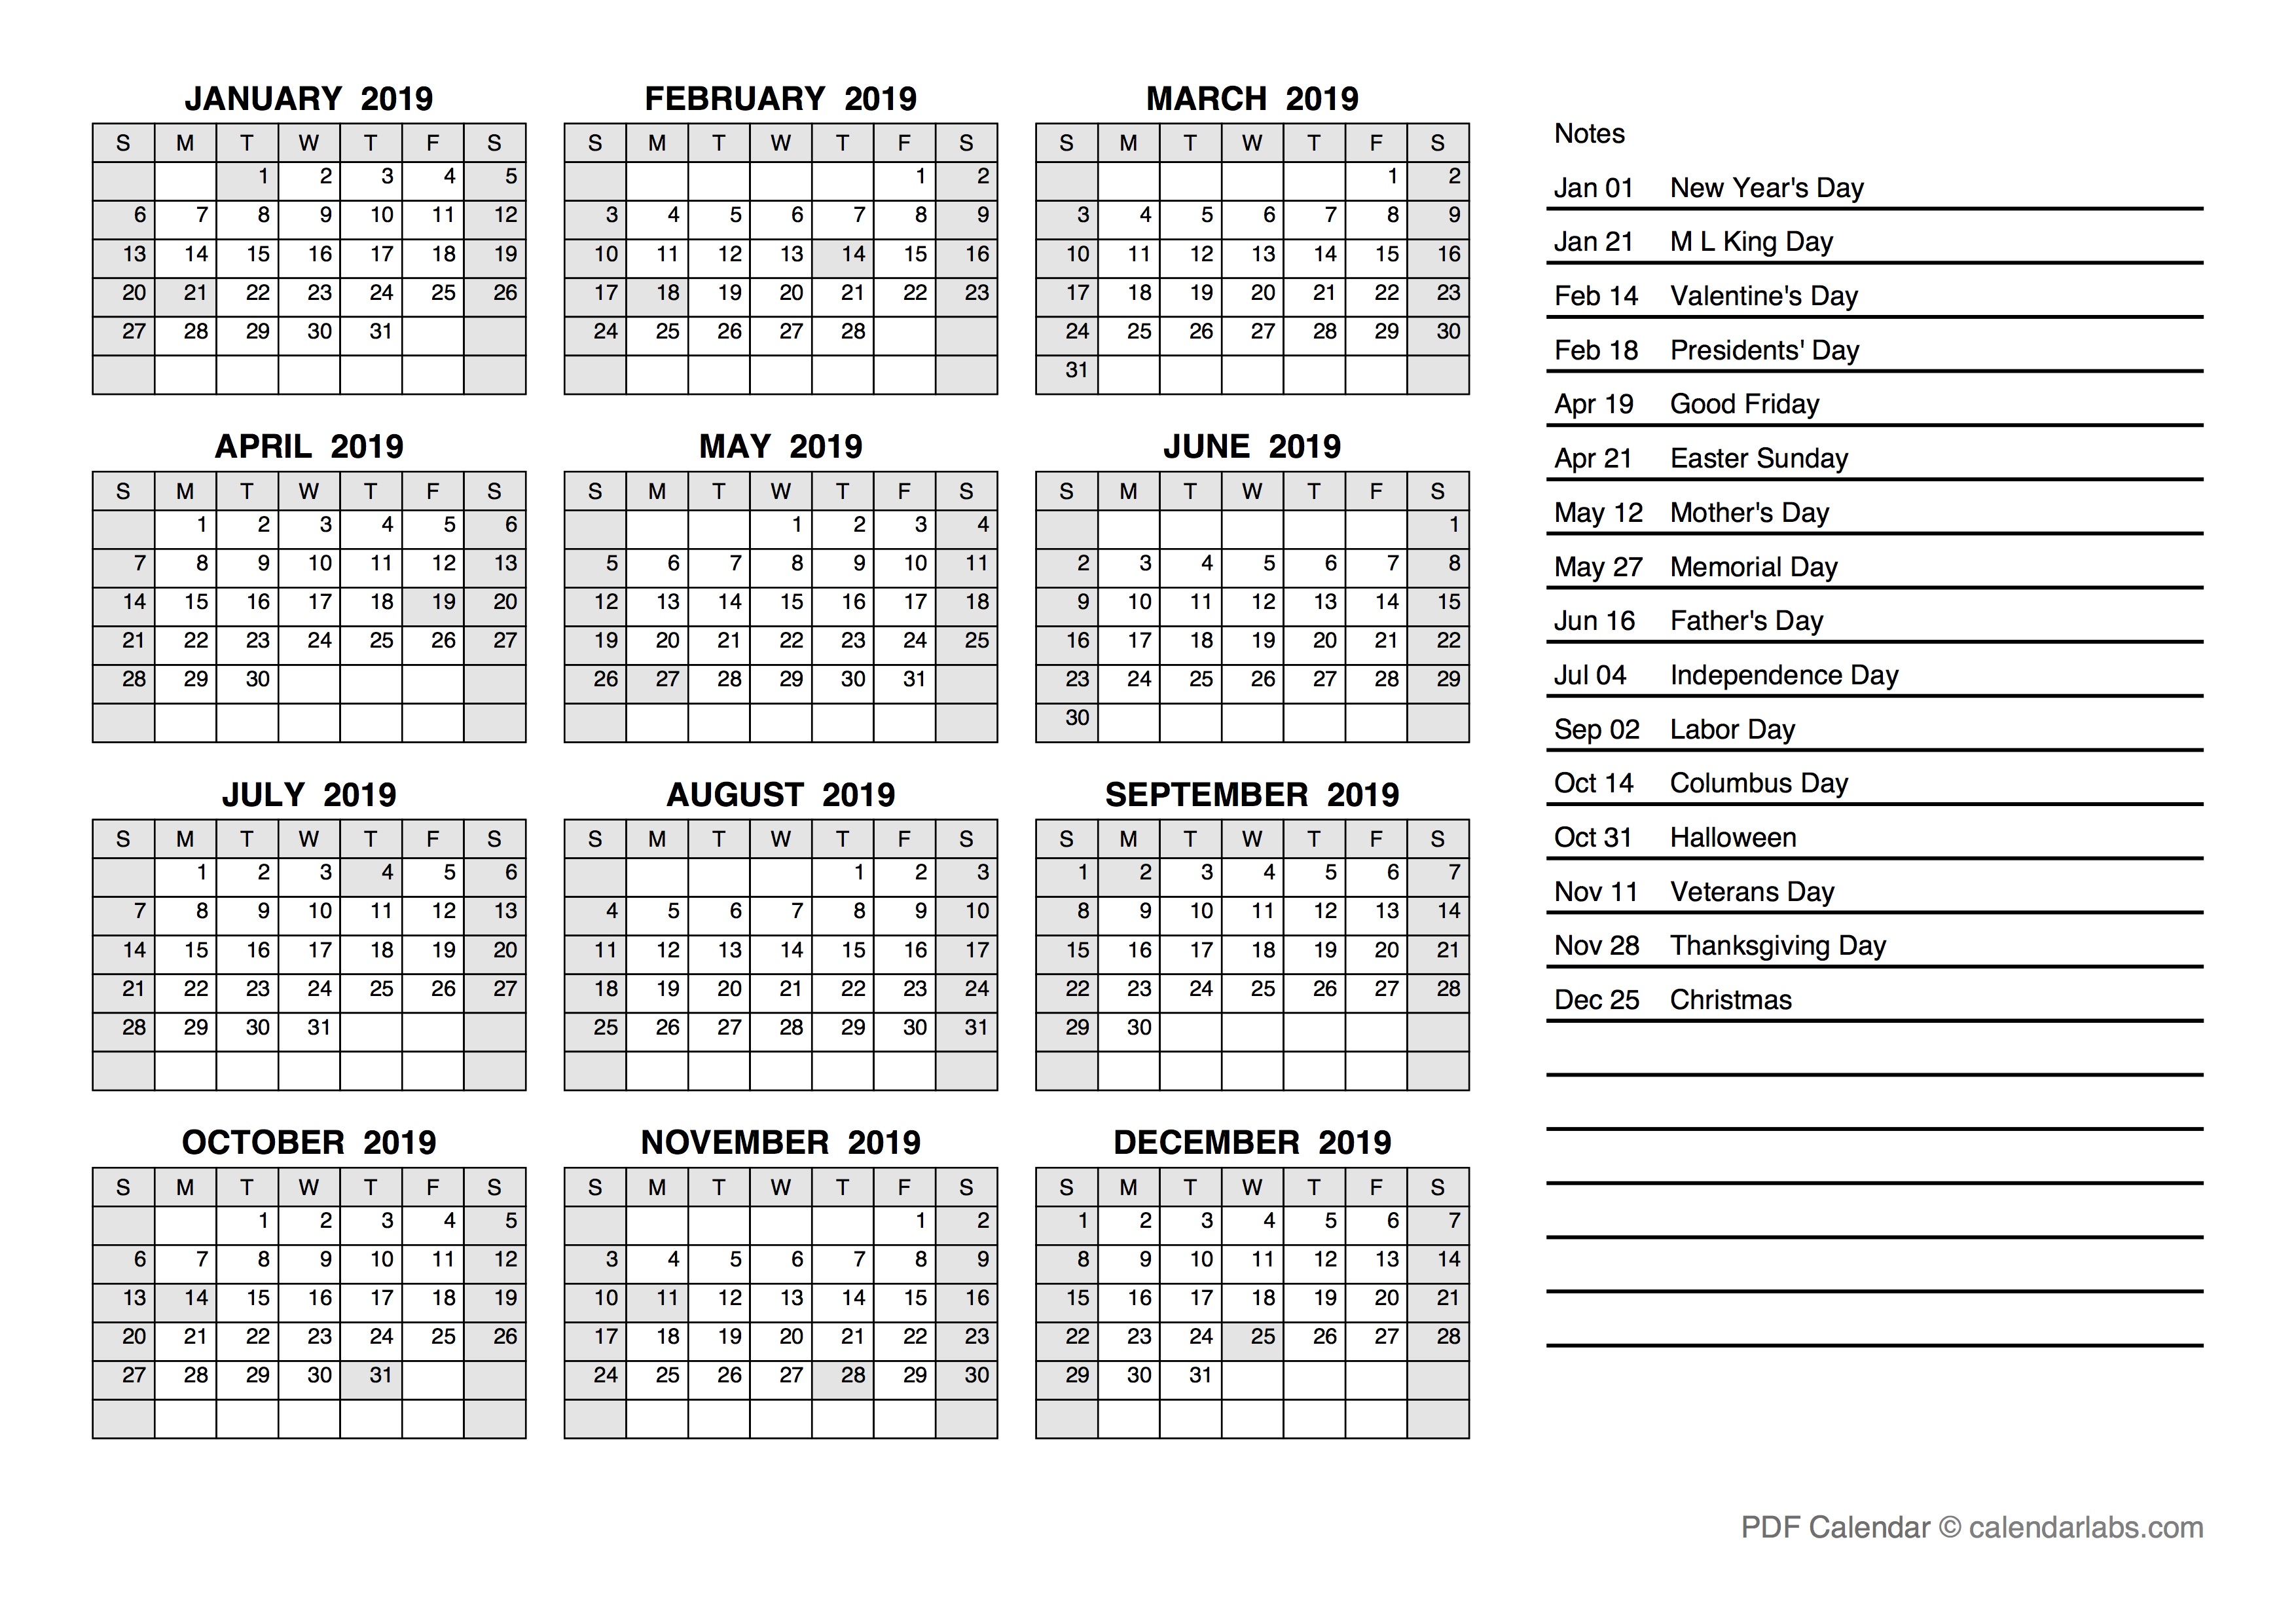 Julian Calendar 2019 - Customize and Print